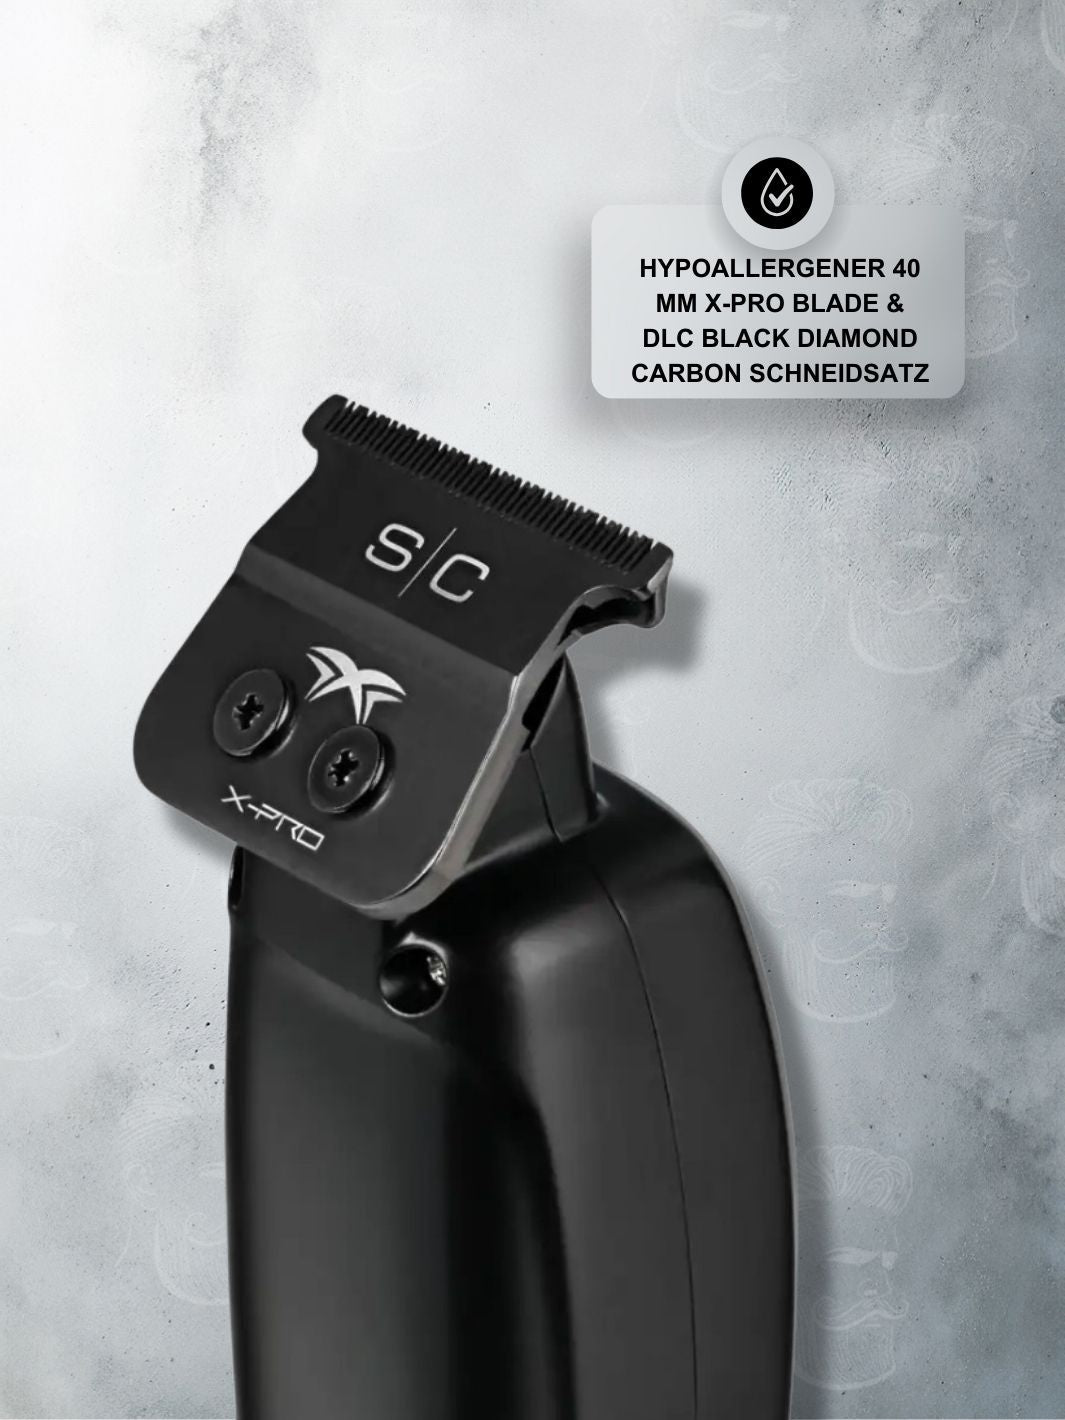 STYLECRAFT SABER Schwarz Professioneller Metalltrimmer mit hypoallergener 40 mm X-Pro Klinge und DLC Black Diamond Carbon Schneidsatz.